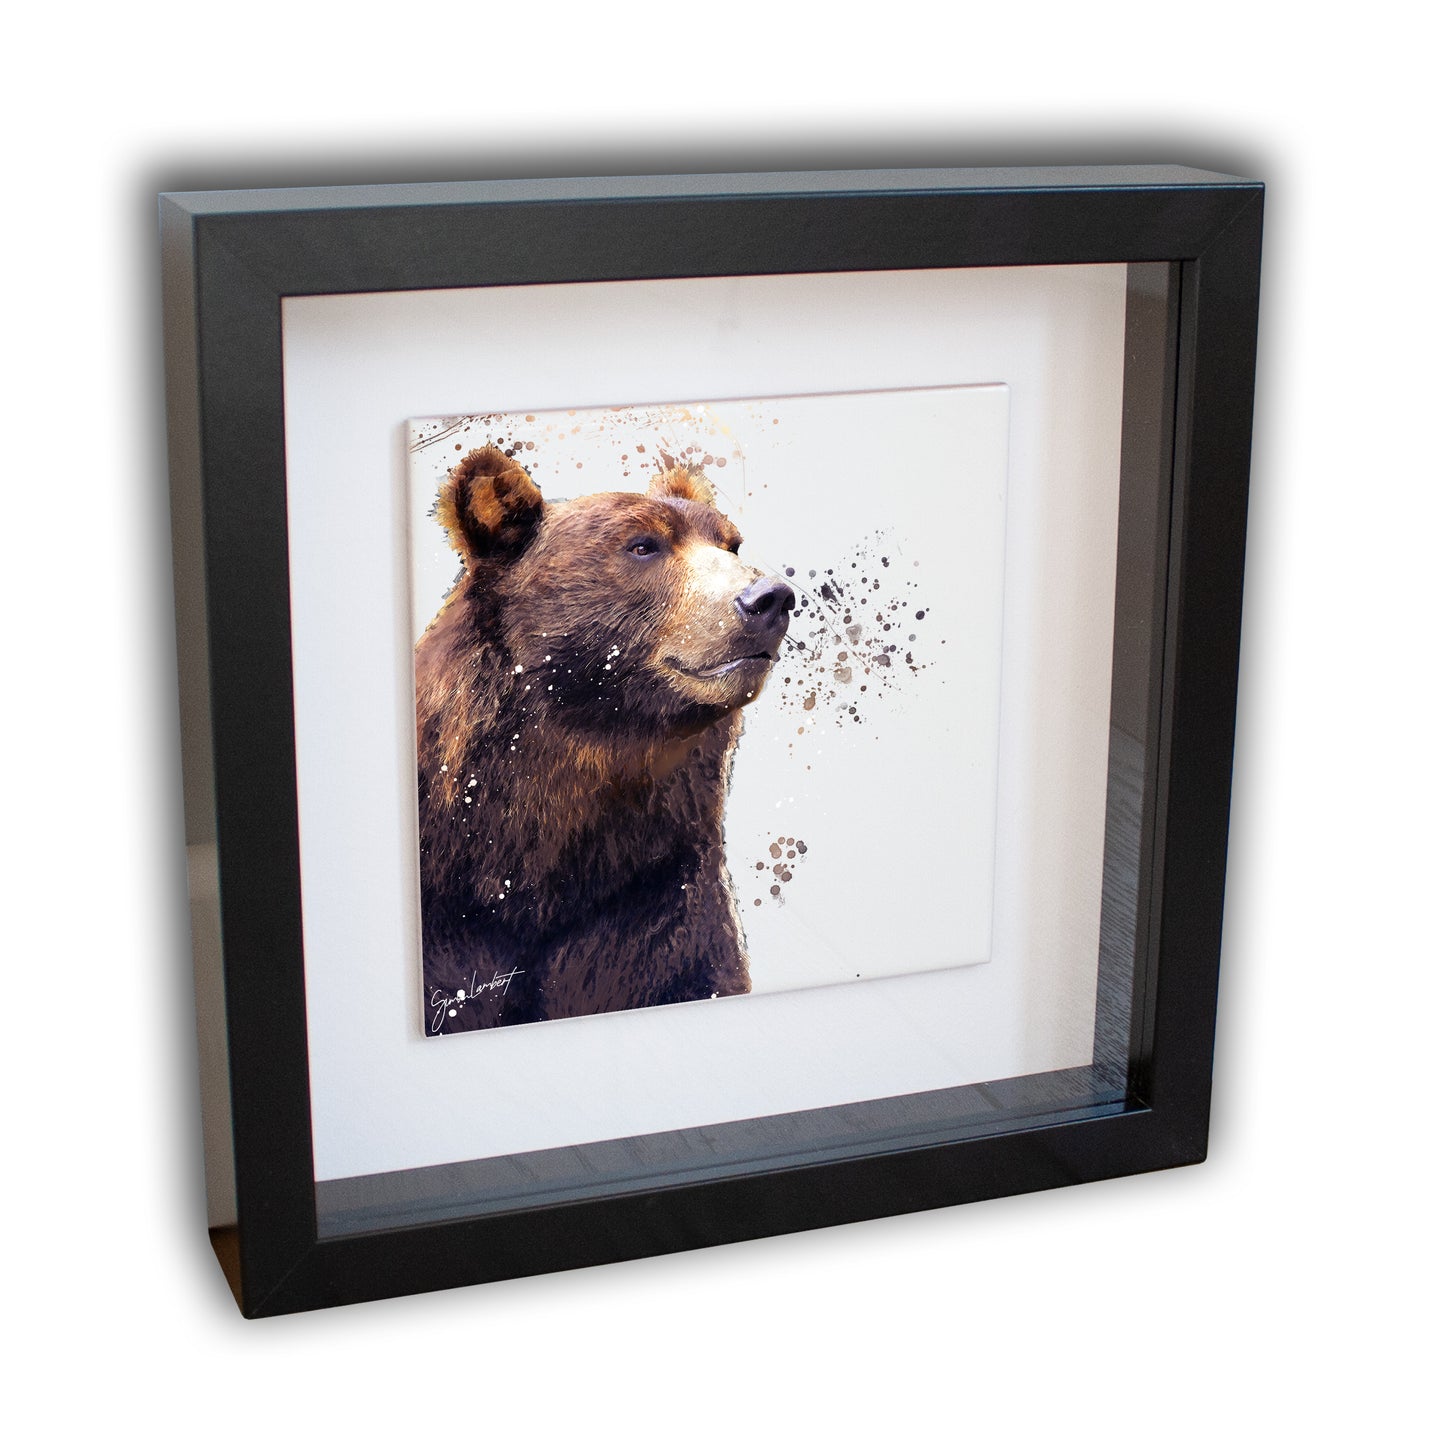 Bear Portrait Brush Splatter Style Artwork - Framed CERAMIC TILE Art